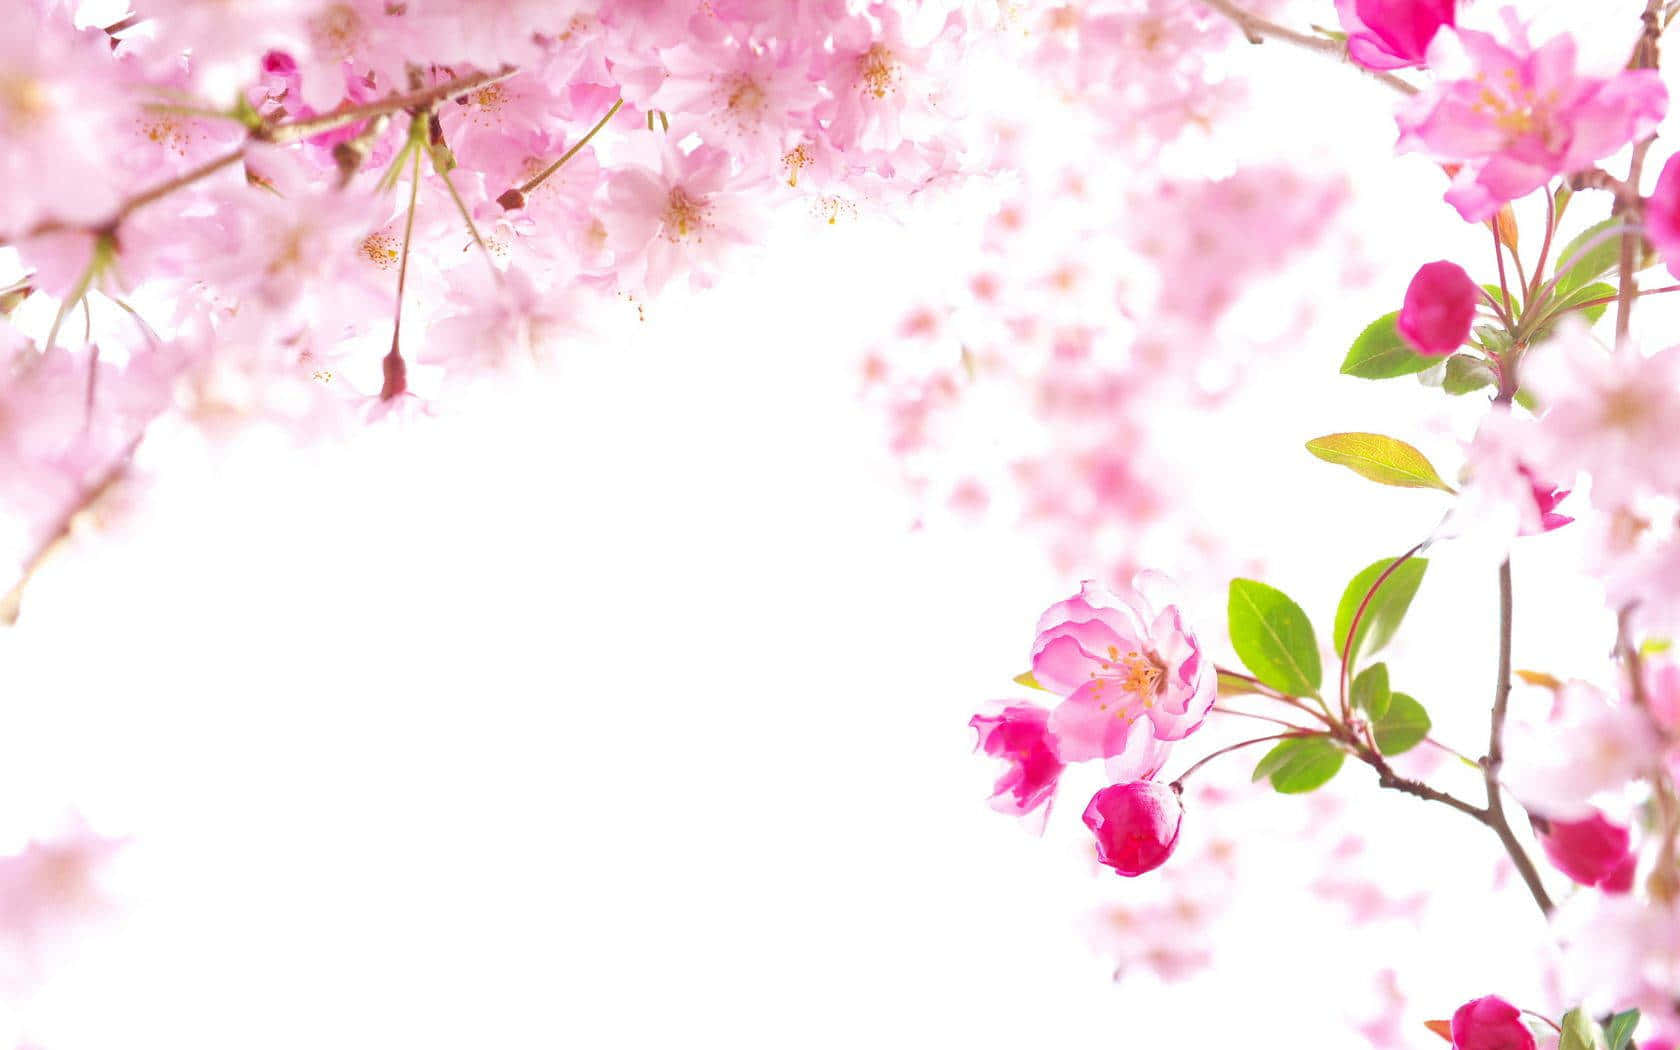 Beautiful Sakura Tree stands in full bloom